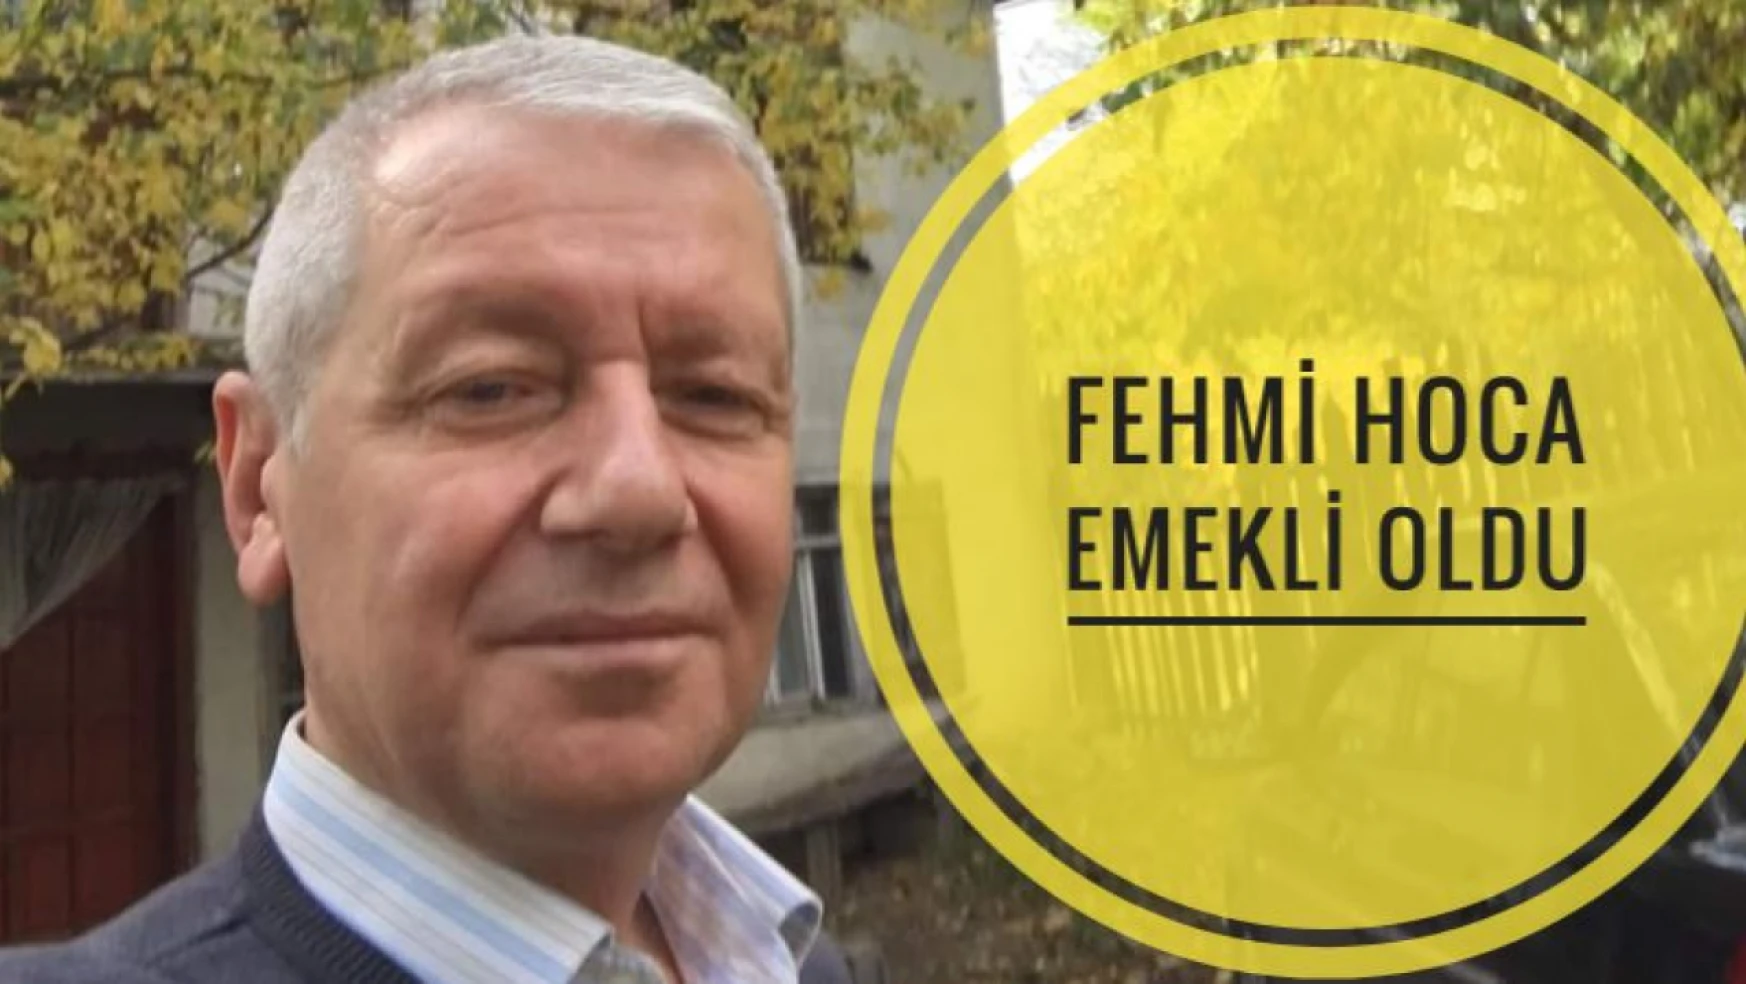 42 yıllık öğretmen Fehmi hoca emekli oldu